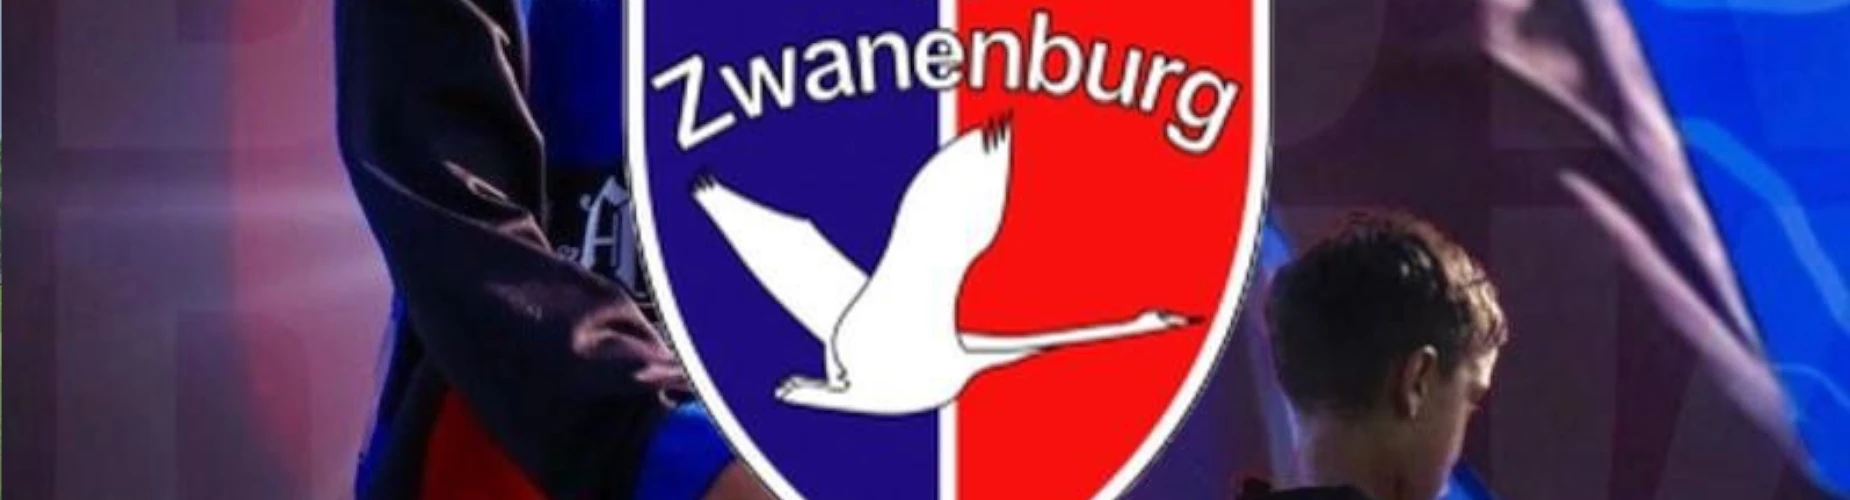 Banner - JO9 - VV Zwanenburg Cup - vv Zwanenburg - Zwanenburg